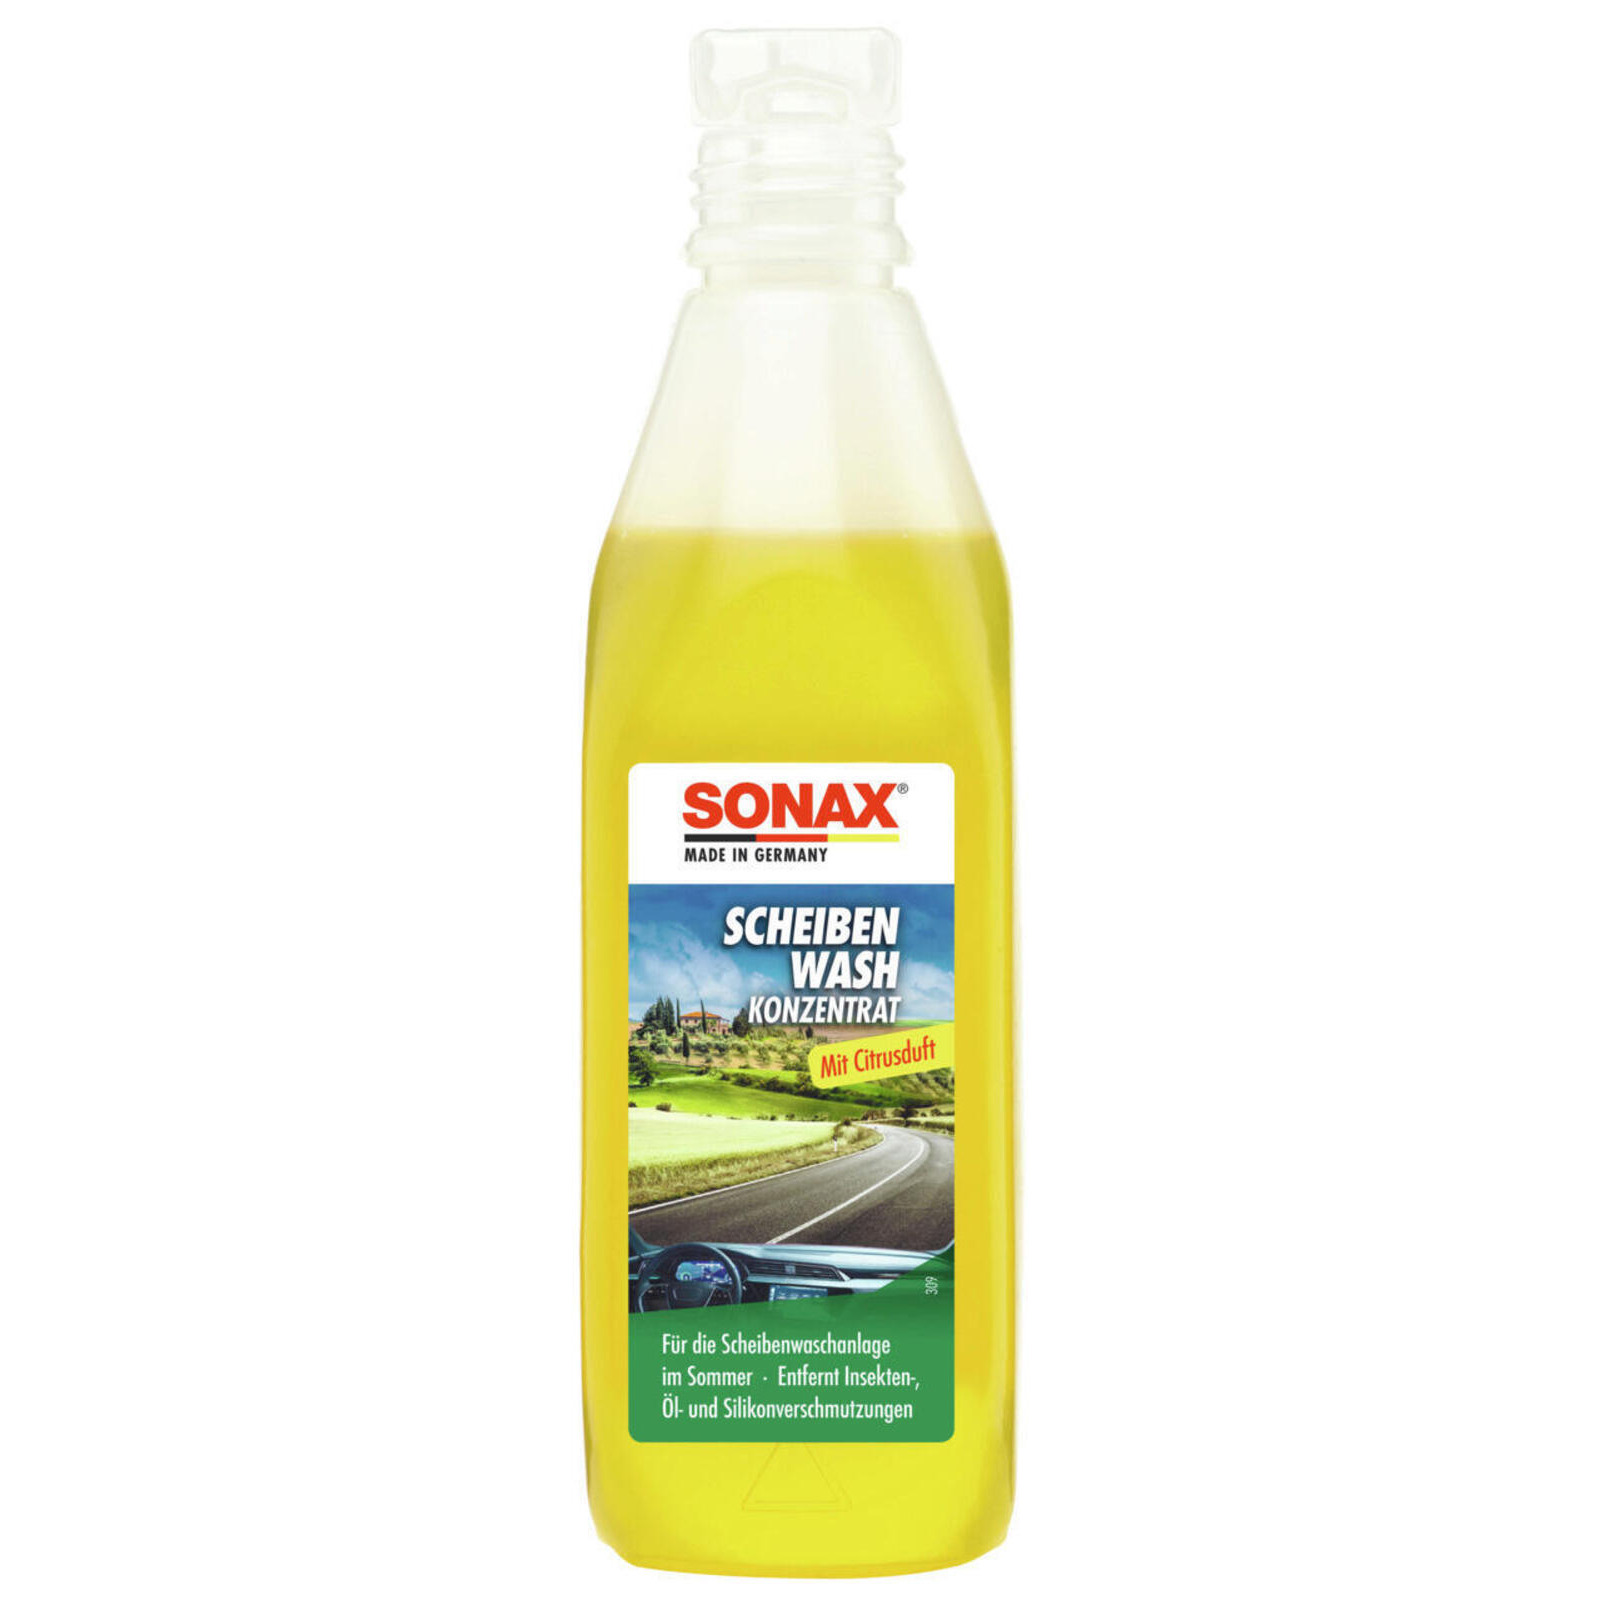 SONAX Reiniger, Scheibenreinigungsanlage ScheibenWash Konzentrat Citrus